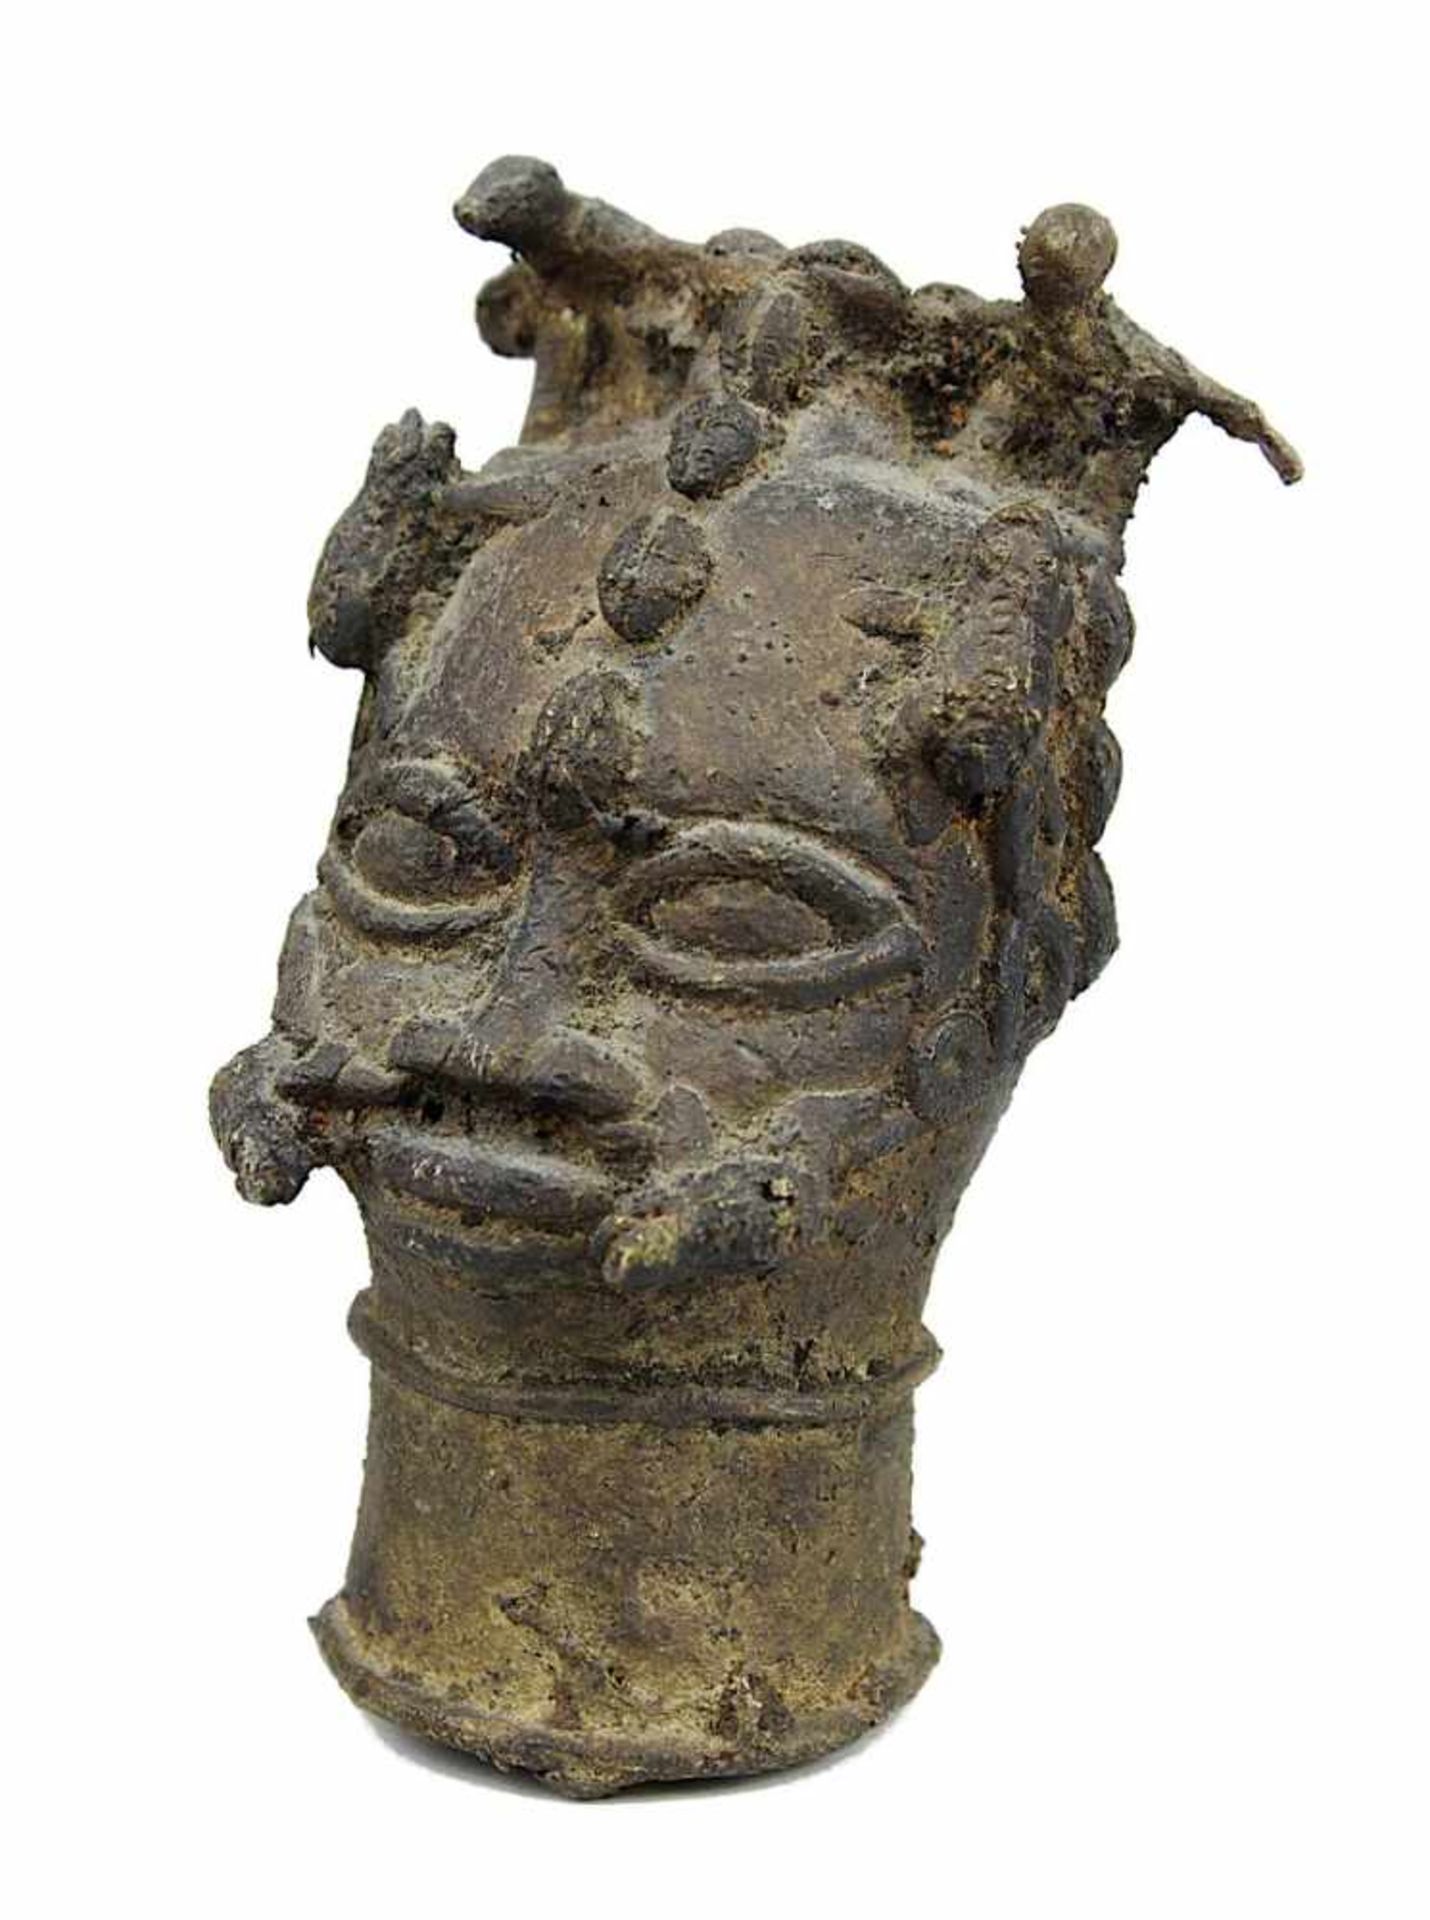 Kleiner Ritualkopf aus Bronze, Benin, Nigeria, mit 2 Vögeln über der Stirn, Kröten an den Schläfen